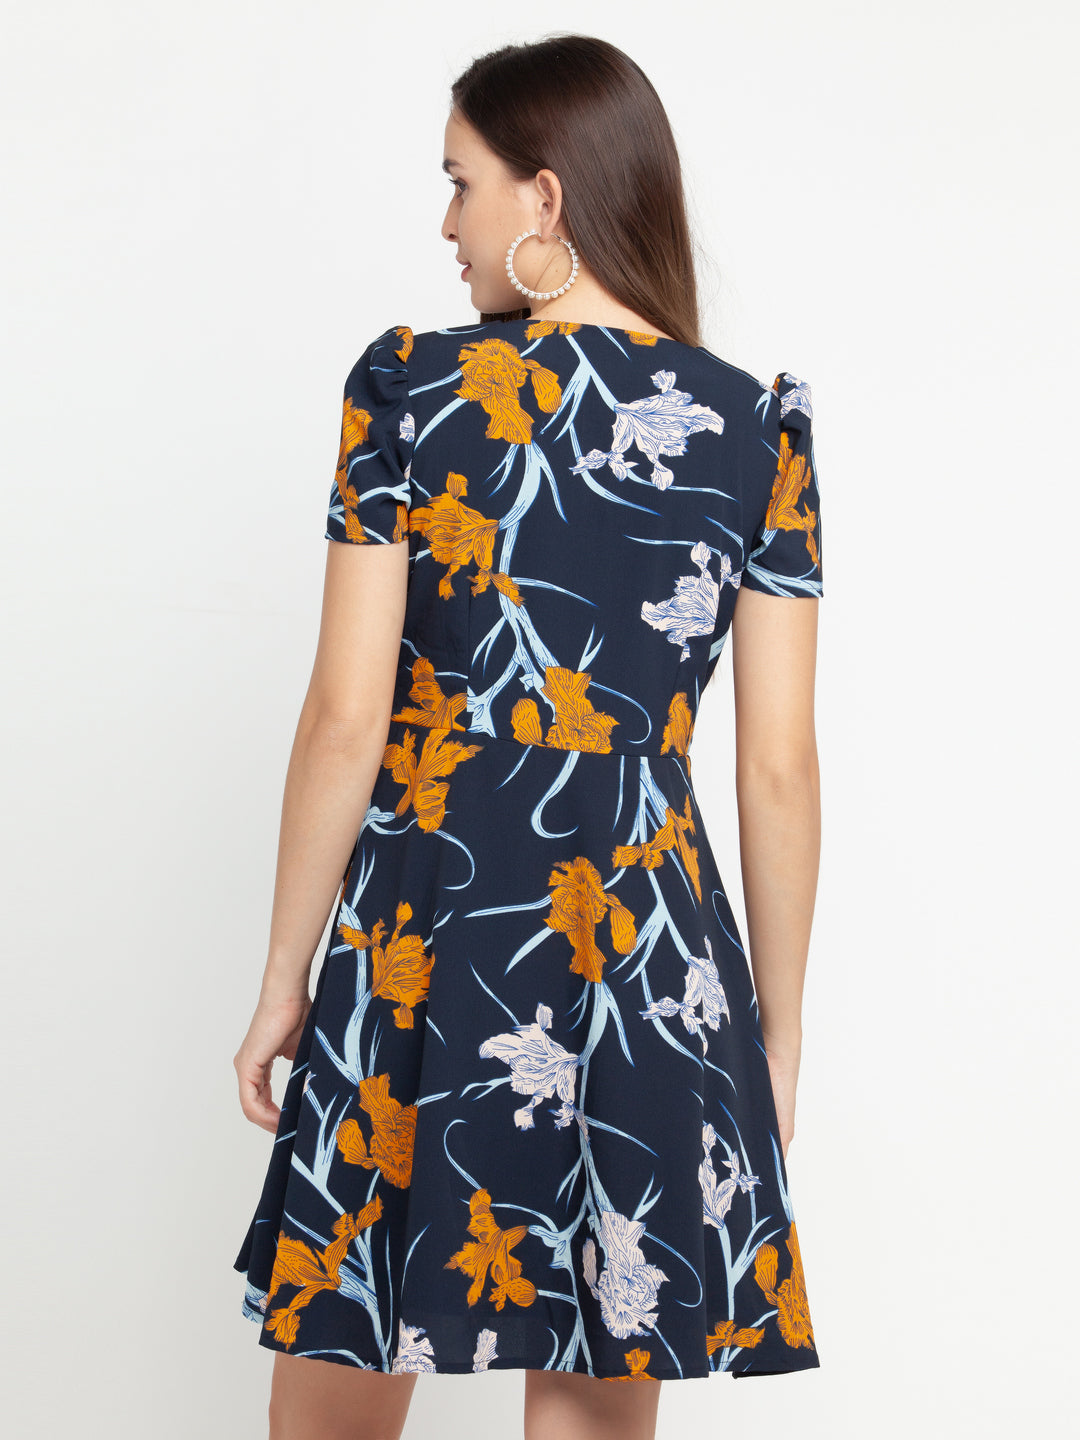 Blue Floral Print Women's Puff Sleeve Short Dress for Women